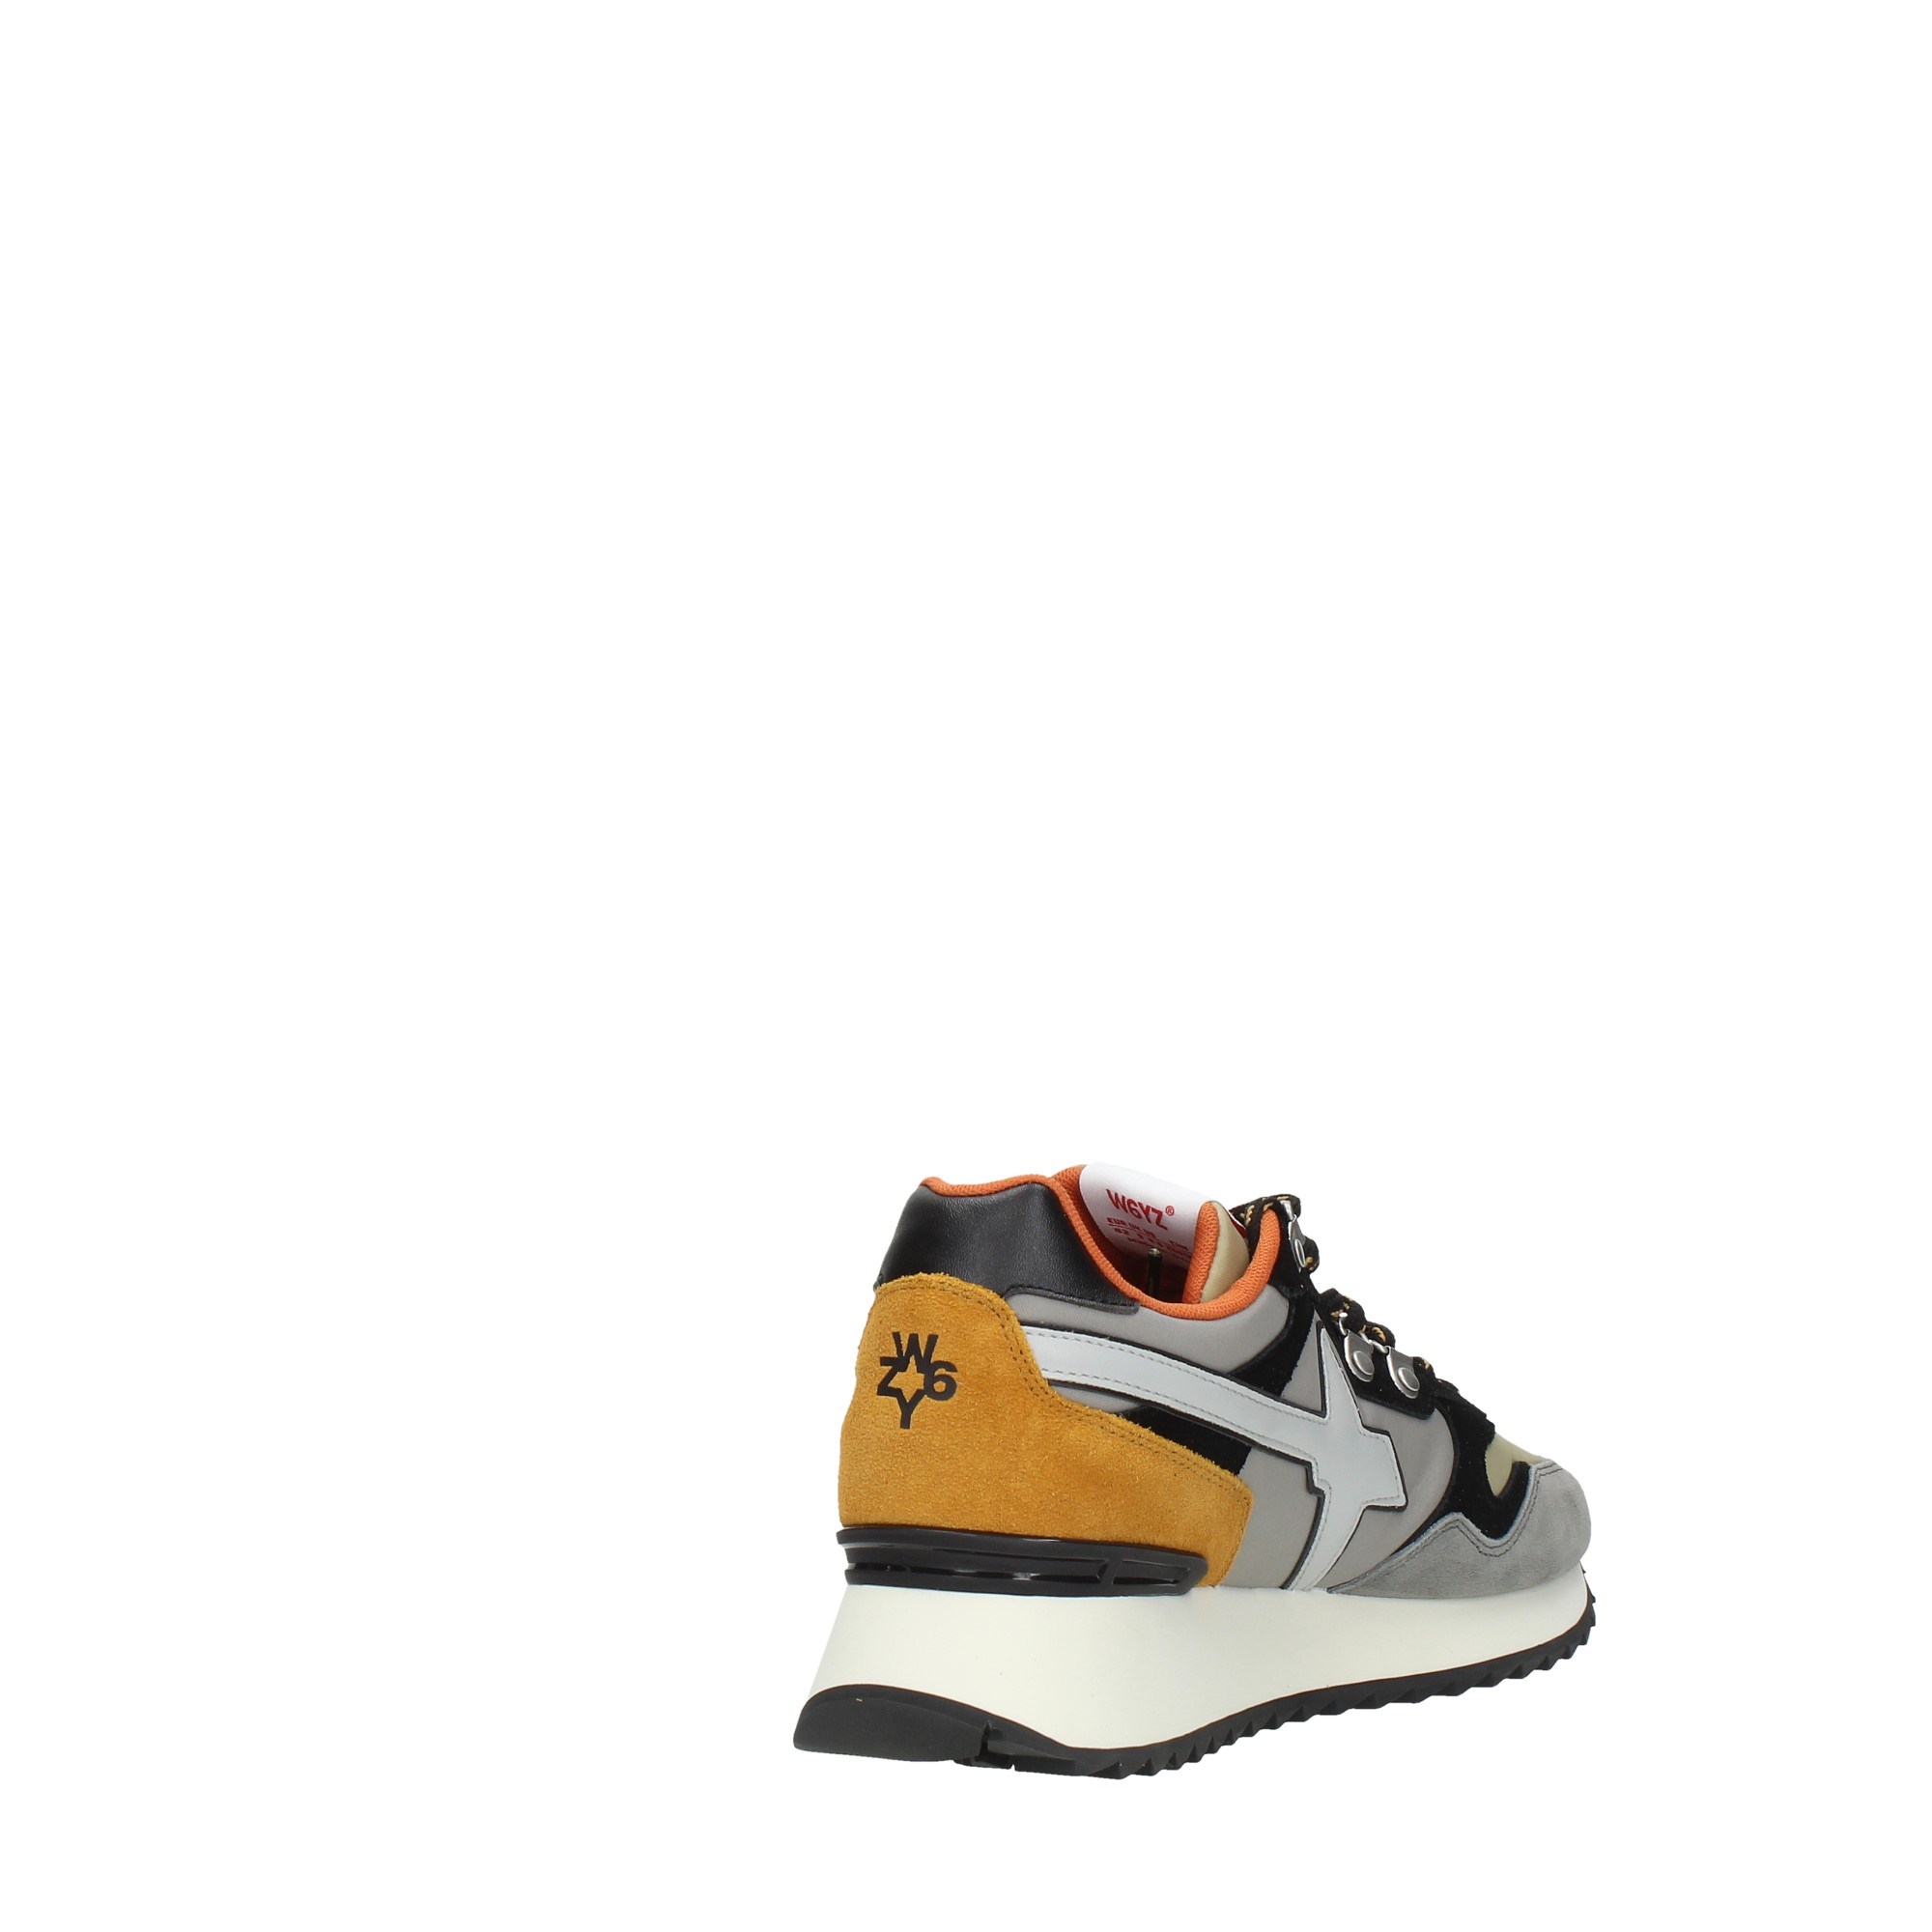 W6yz Shoes Man Sneakers YAK-M 2B39